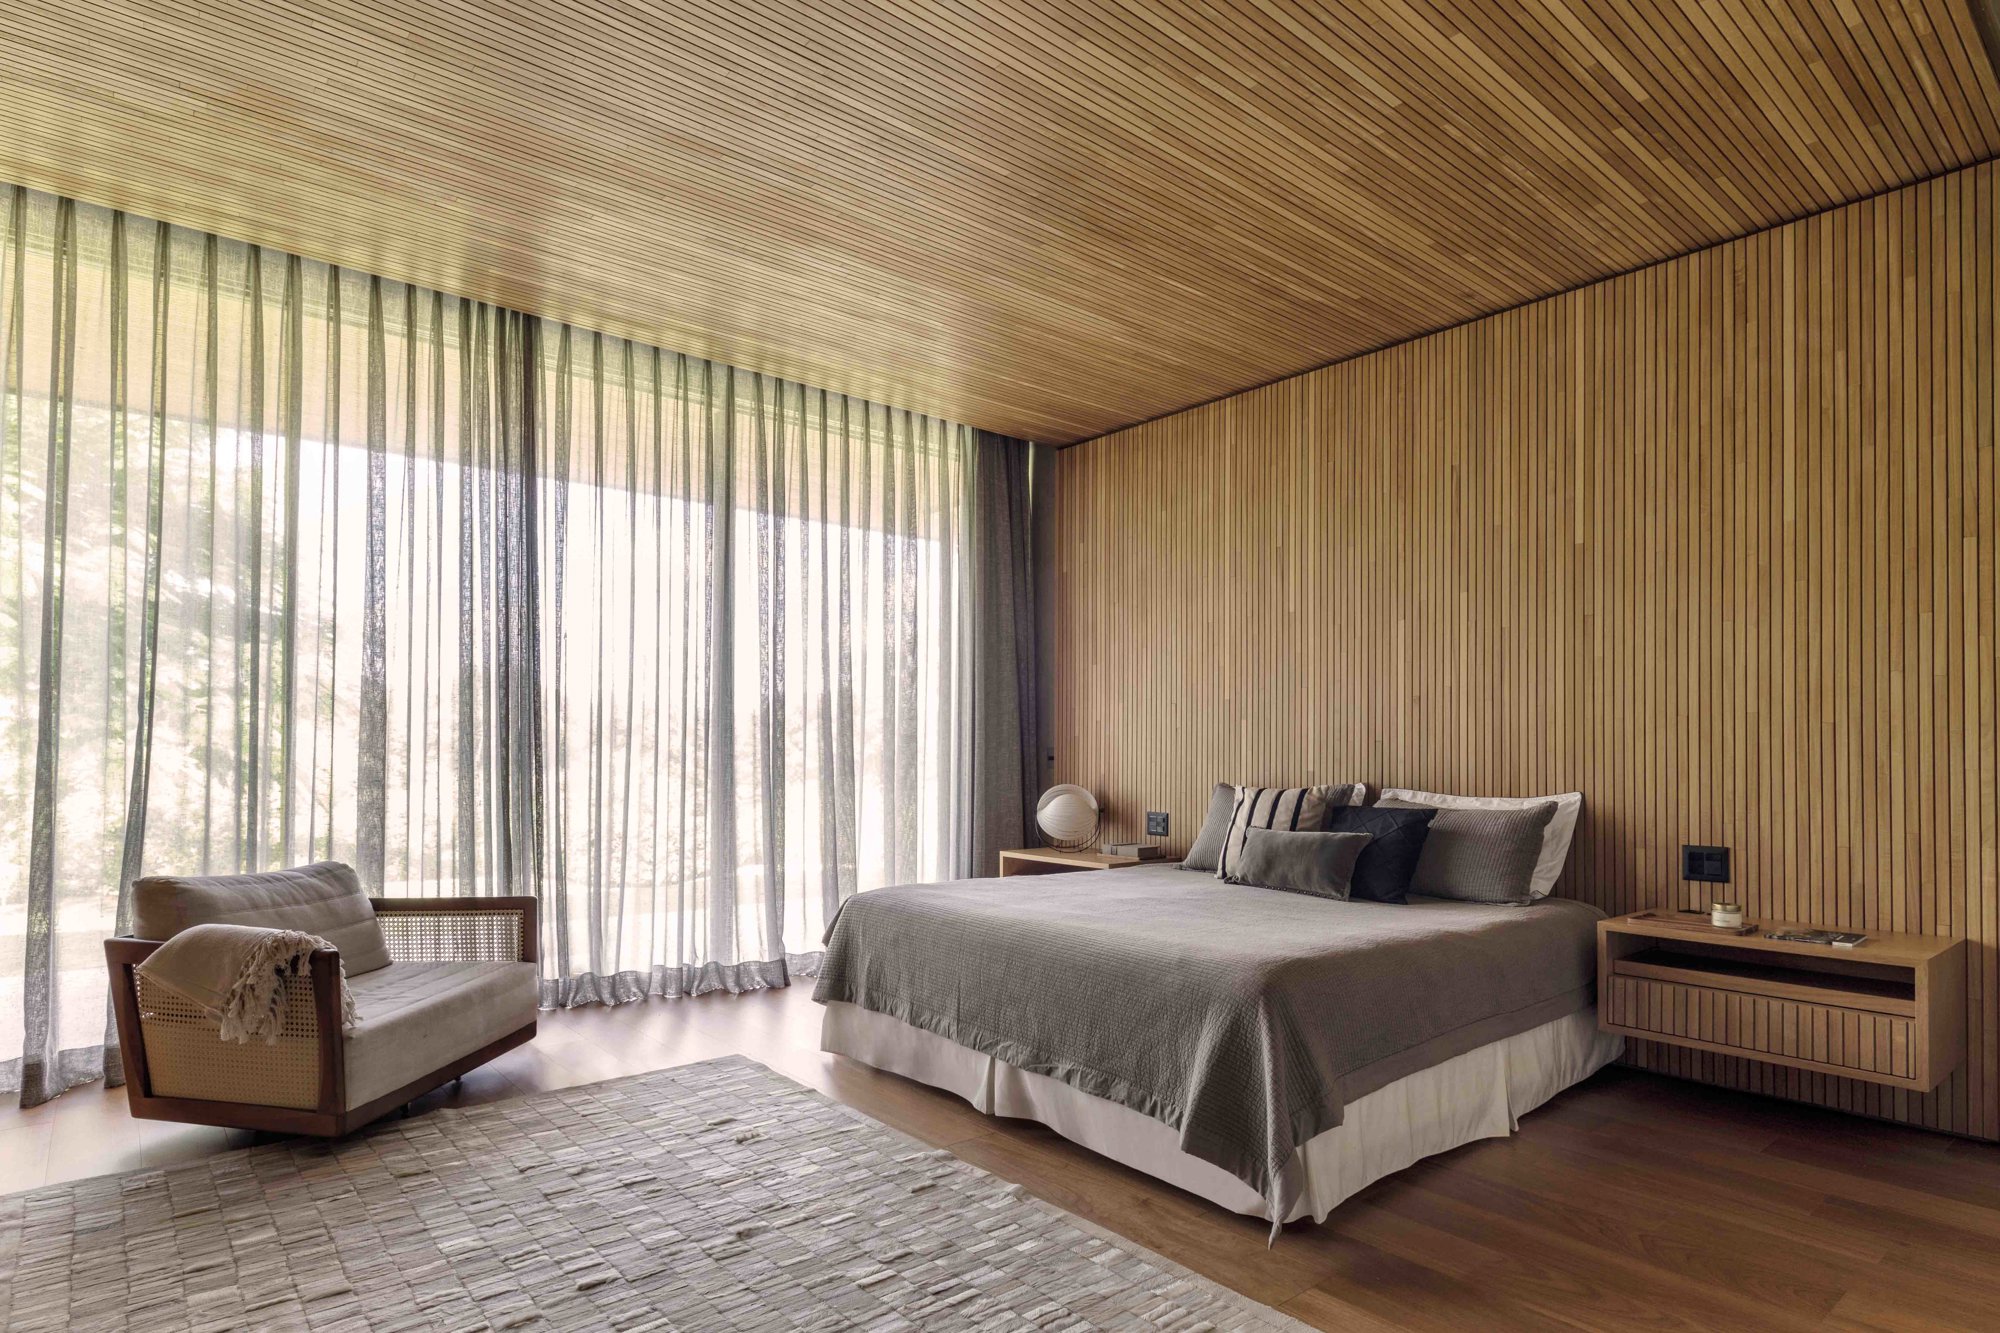 Dormitotorio con paredes, suelos y techos de madera y ropa de cama en blanco y gris.